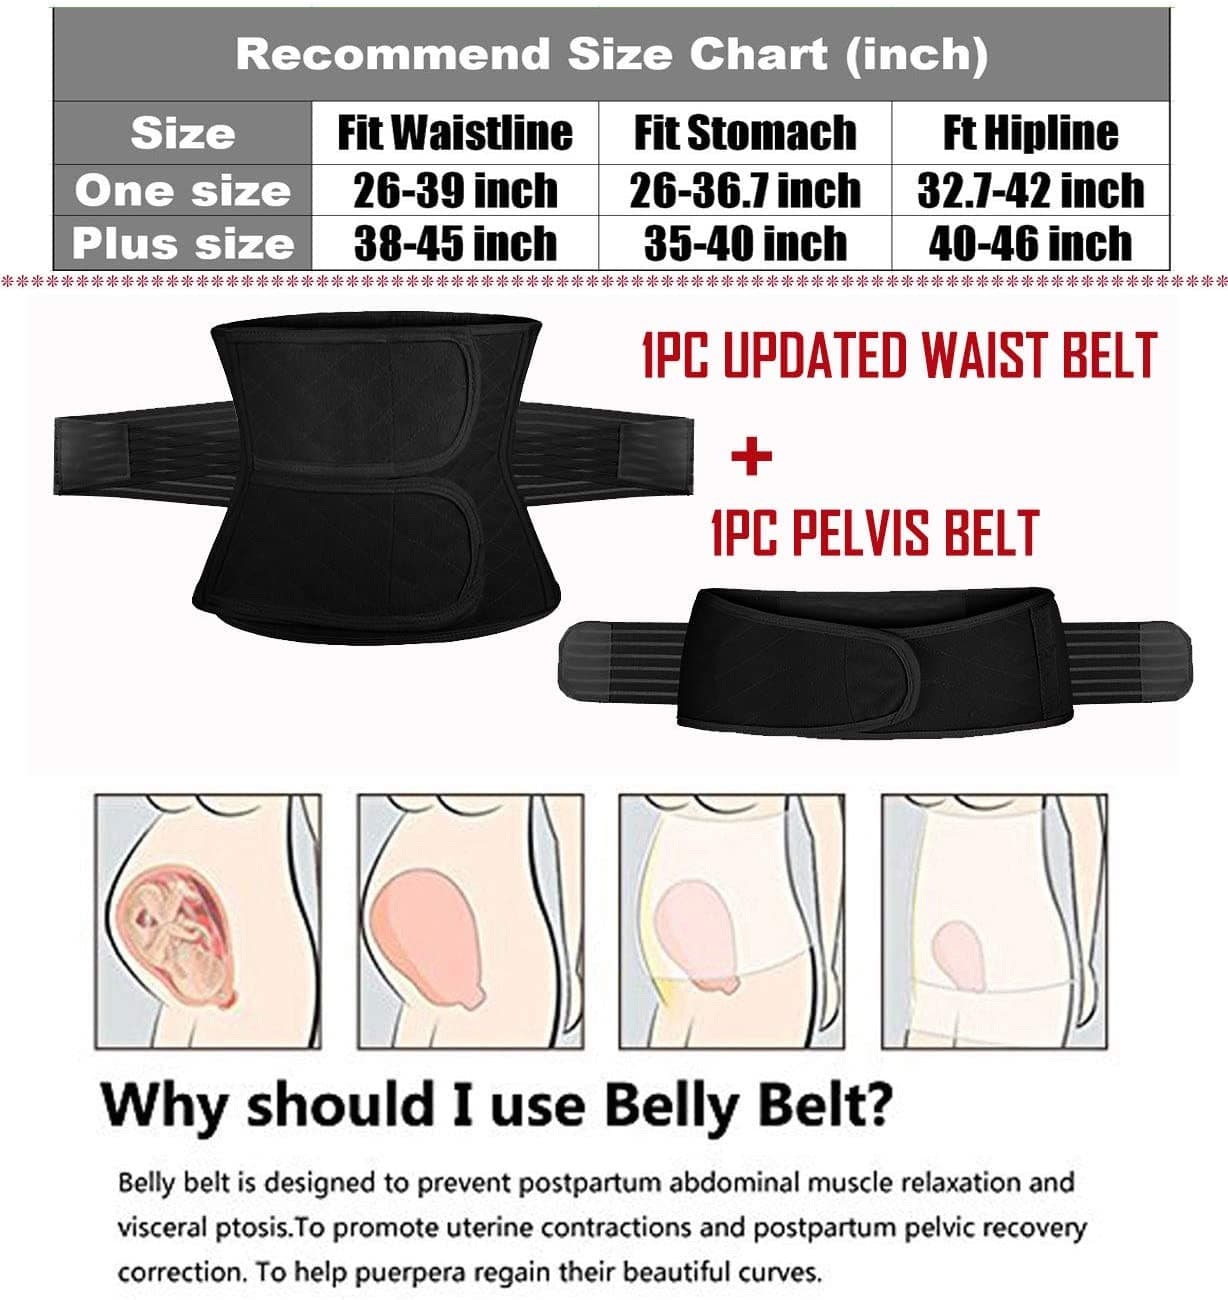 2 in 1 Postpartum Support Recovery Belly Wrap Waist/Pelvis Belt Body Shaper Postnatal Shapewear,One Size Black.